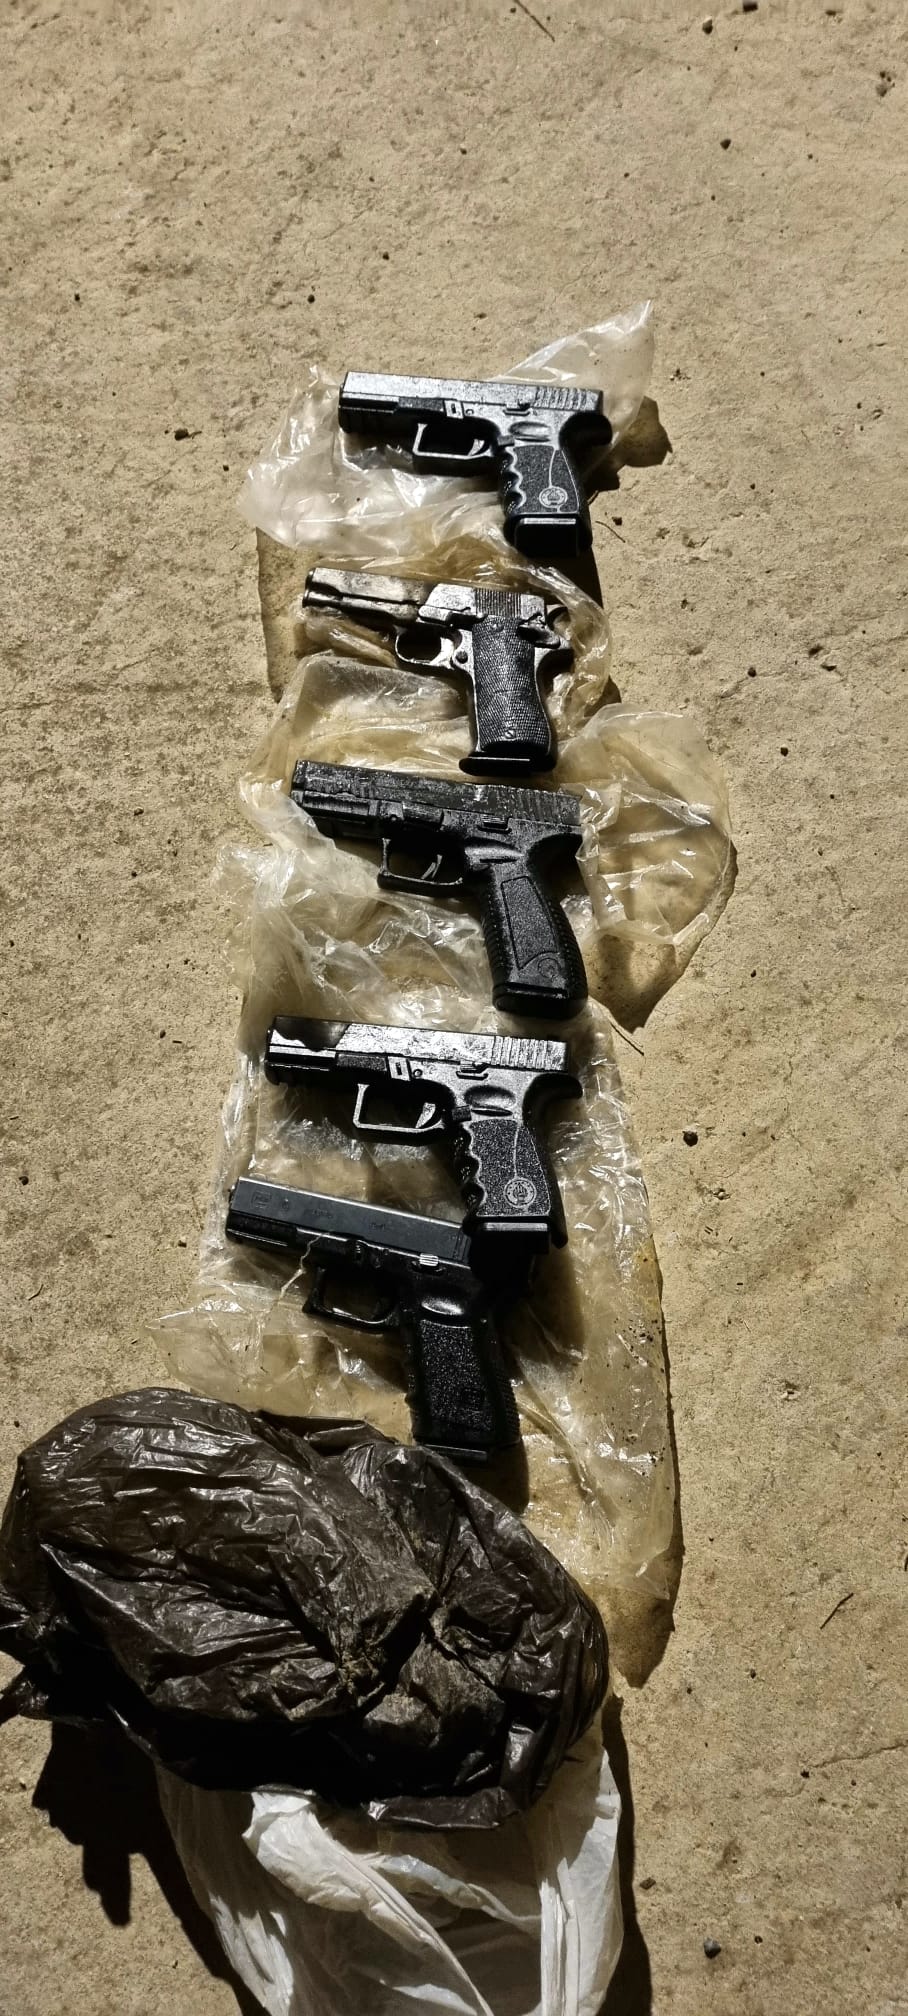 יג”ל משטרת מחוז הצפון וצה”ל עצרו שלושה סוחרי נשק שברשותם חמישה אקדחים